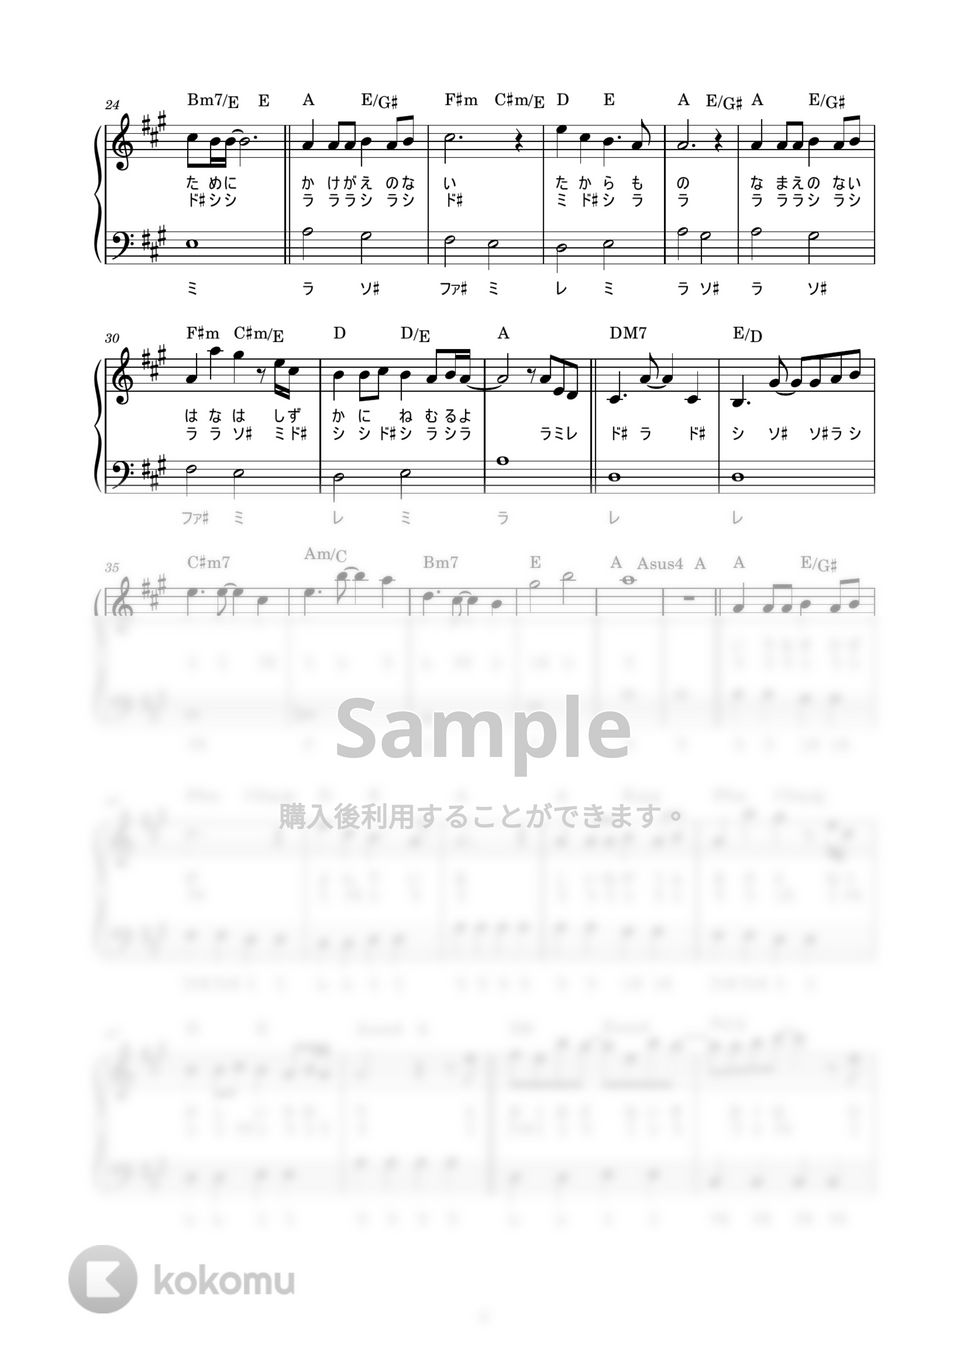 茅原実里 - みちしるべ (かんたん / 歌詞付き / ドレミ付き / 初心者) by piano.tokyo